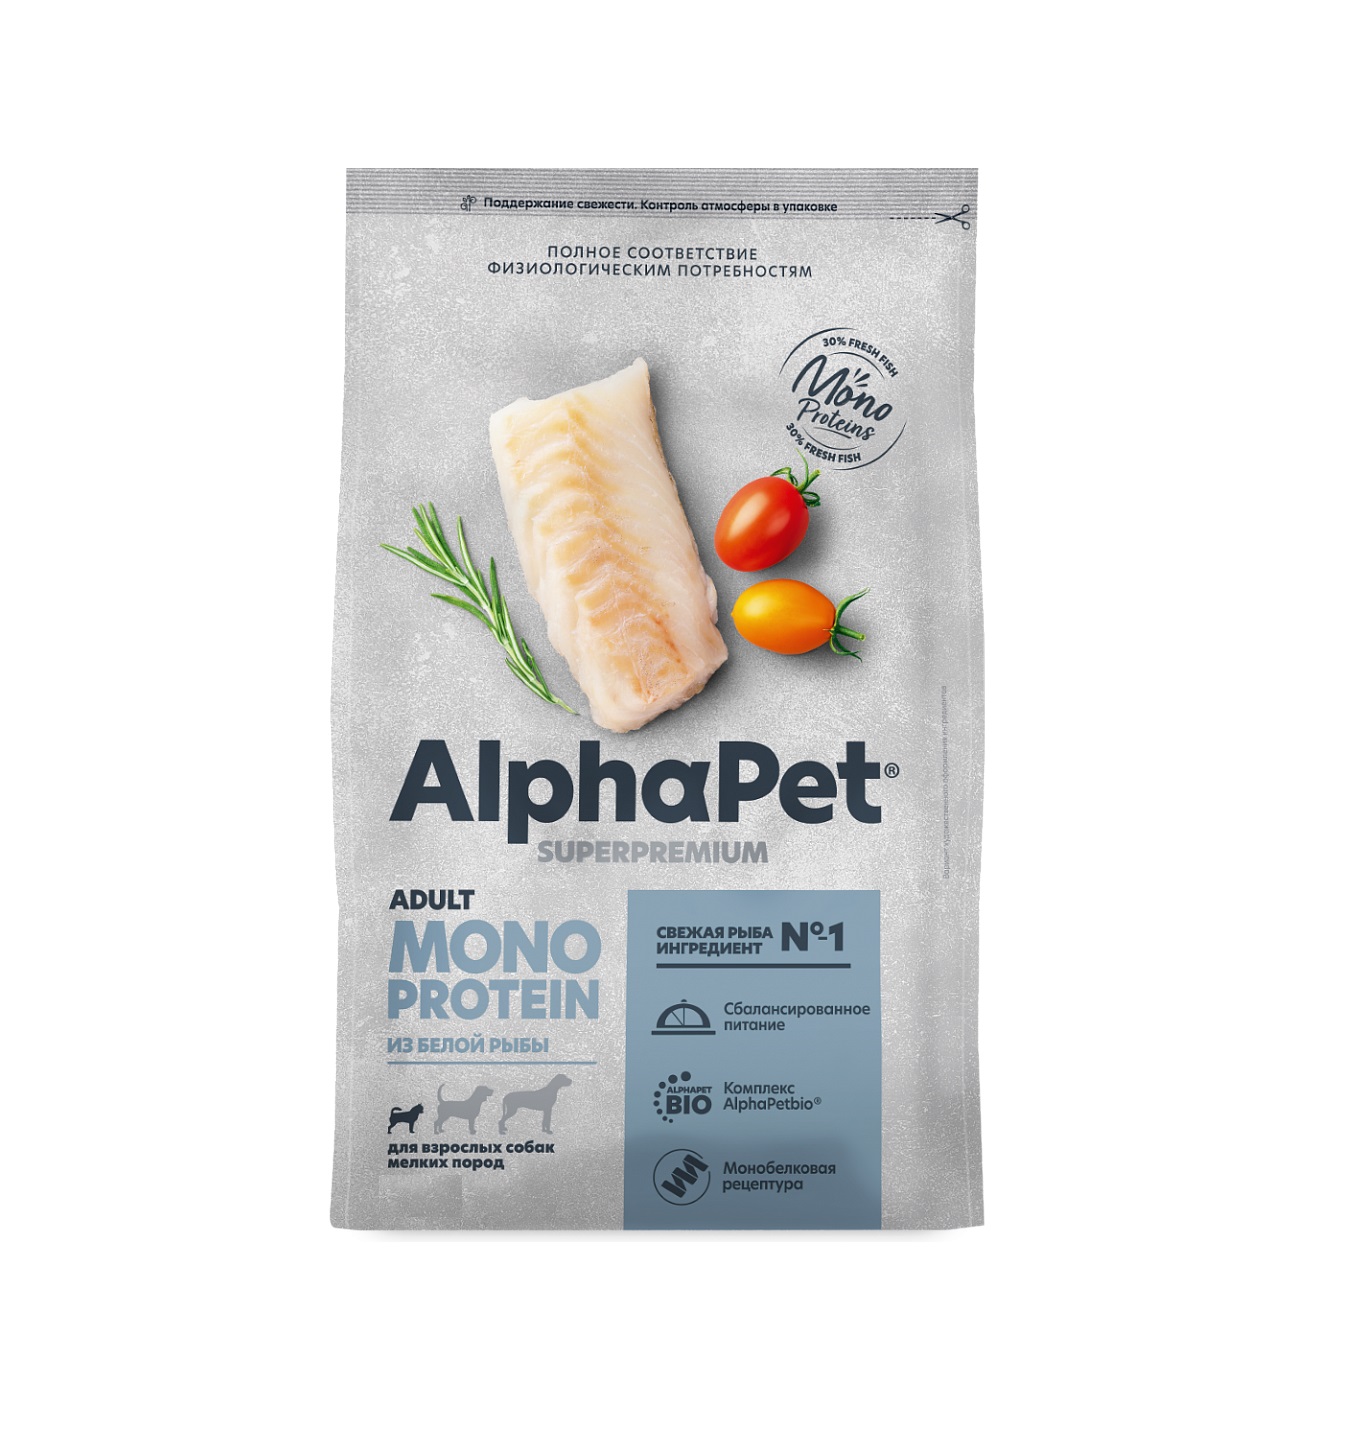 АльфаПет Монопротеин 500гр - для Мелких Собак, Белая Рыба (Alpha Pet Monoprotein)